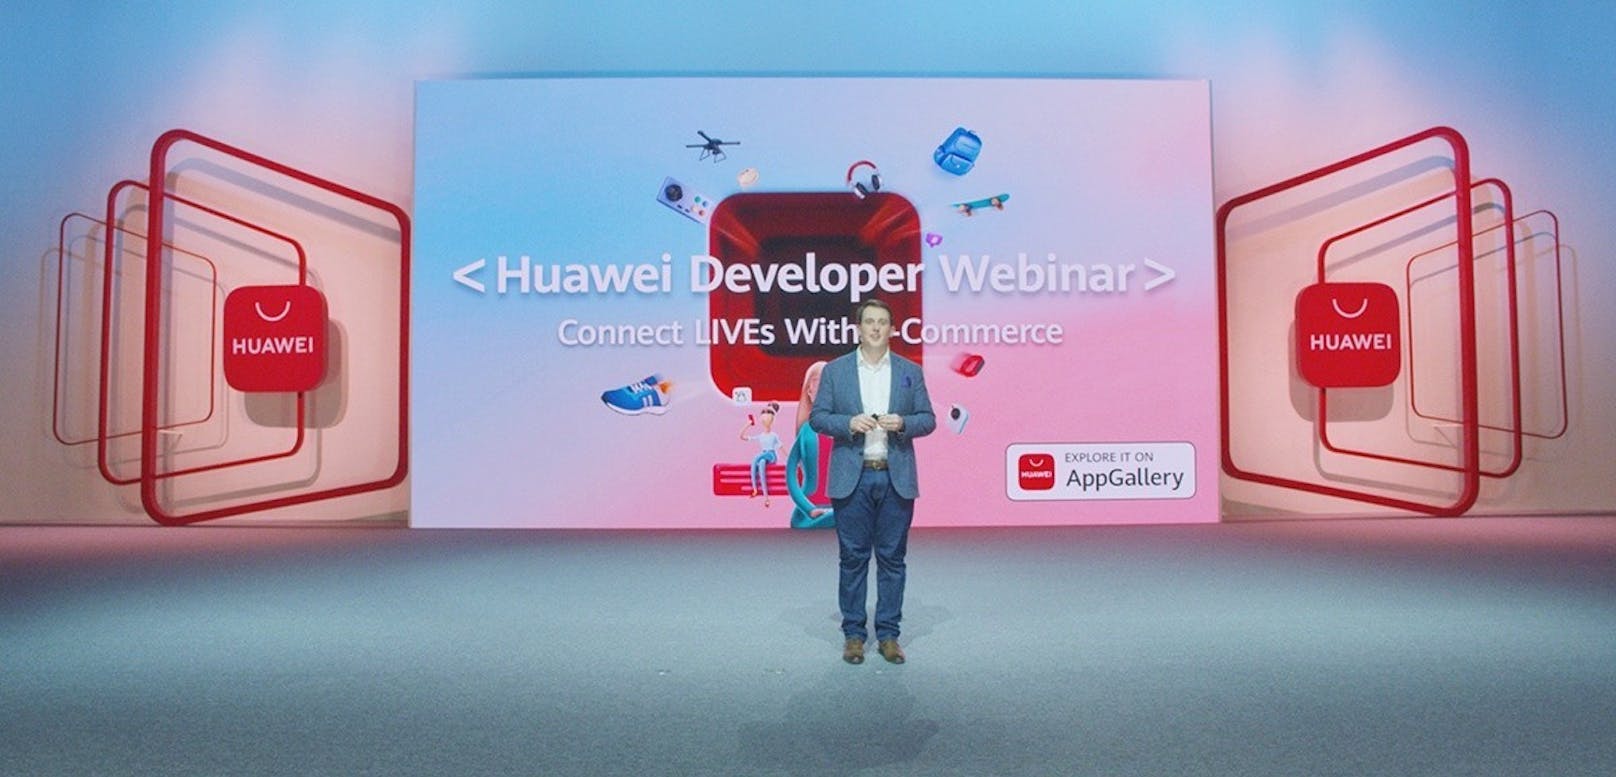 Im Zuge des Huawei Developer Webinars wurden Huaweis Weiterentwicklungen des Huawei Mobile Services (HMS)-Cores vorgestellt.